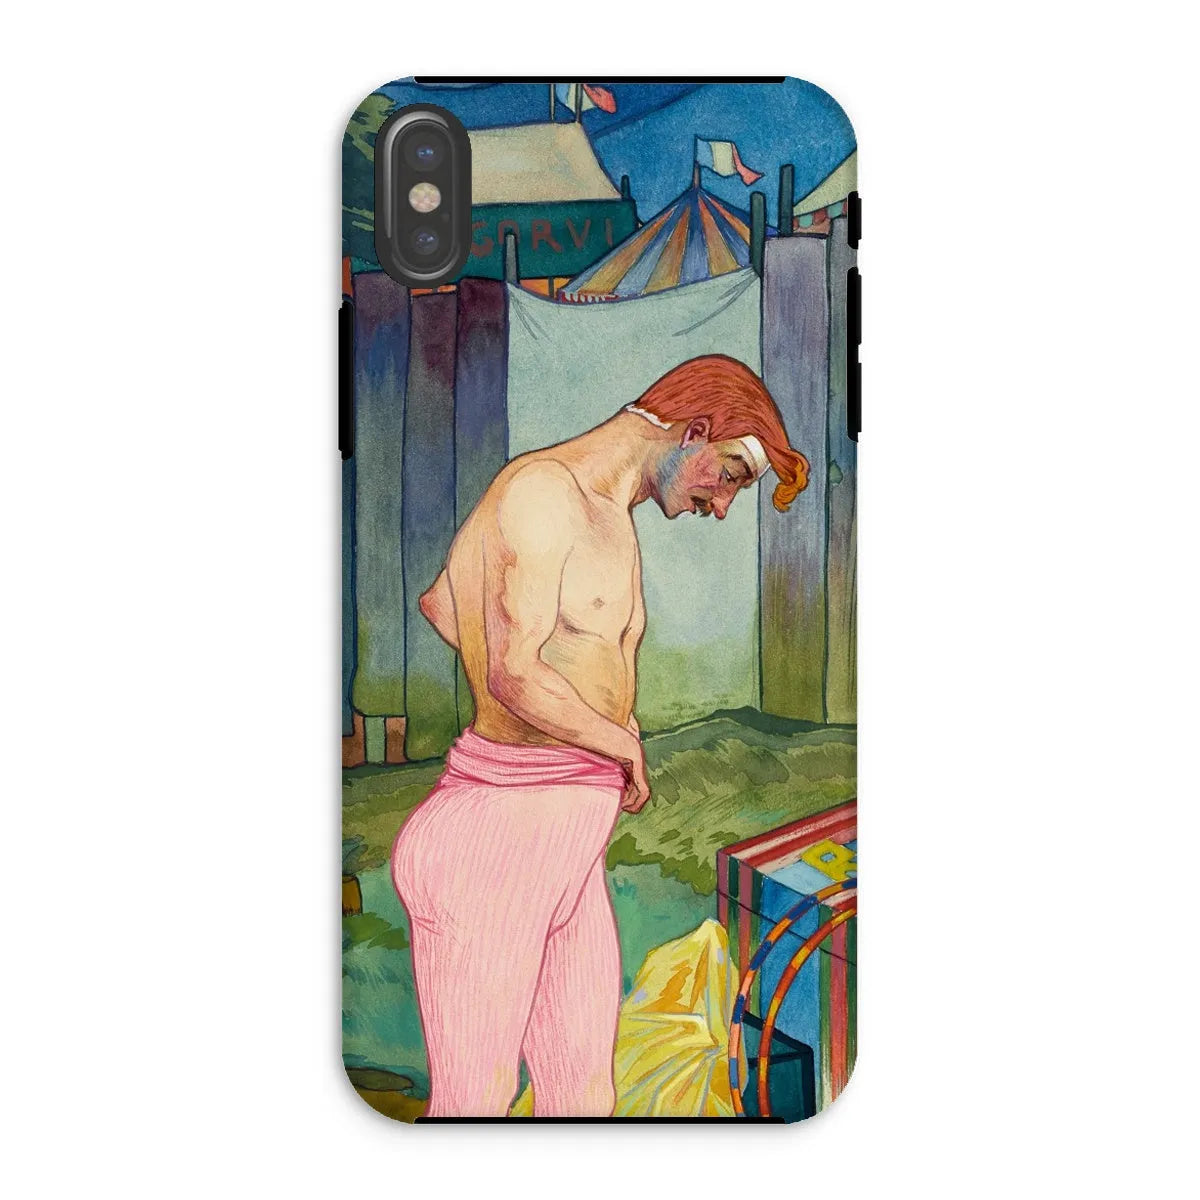 Le Cirque Corvi - Georges De Feure Art Nouveau Phone Case - Iphone Xs / Matte - Mobile Phone Cases - Aesthetic Art